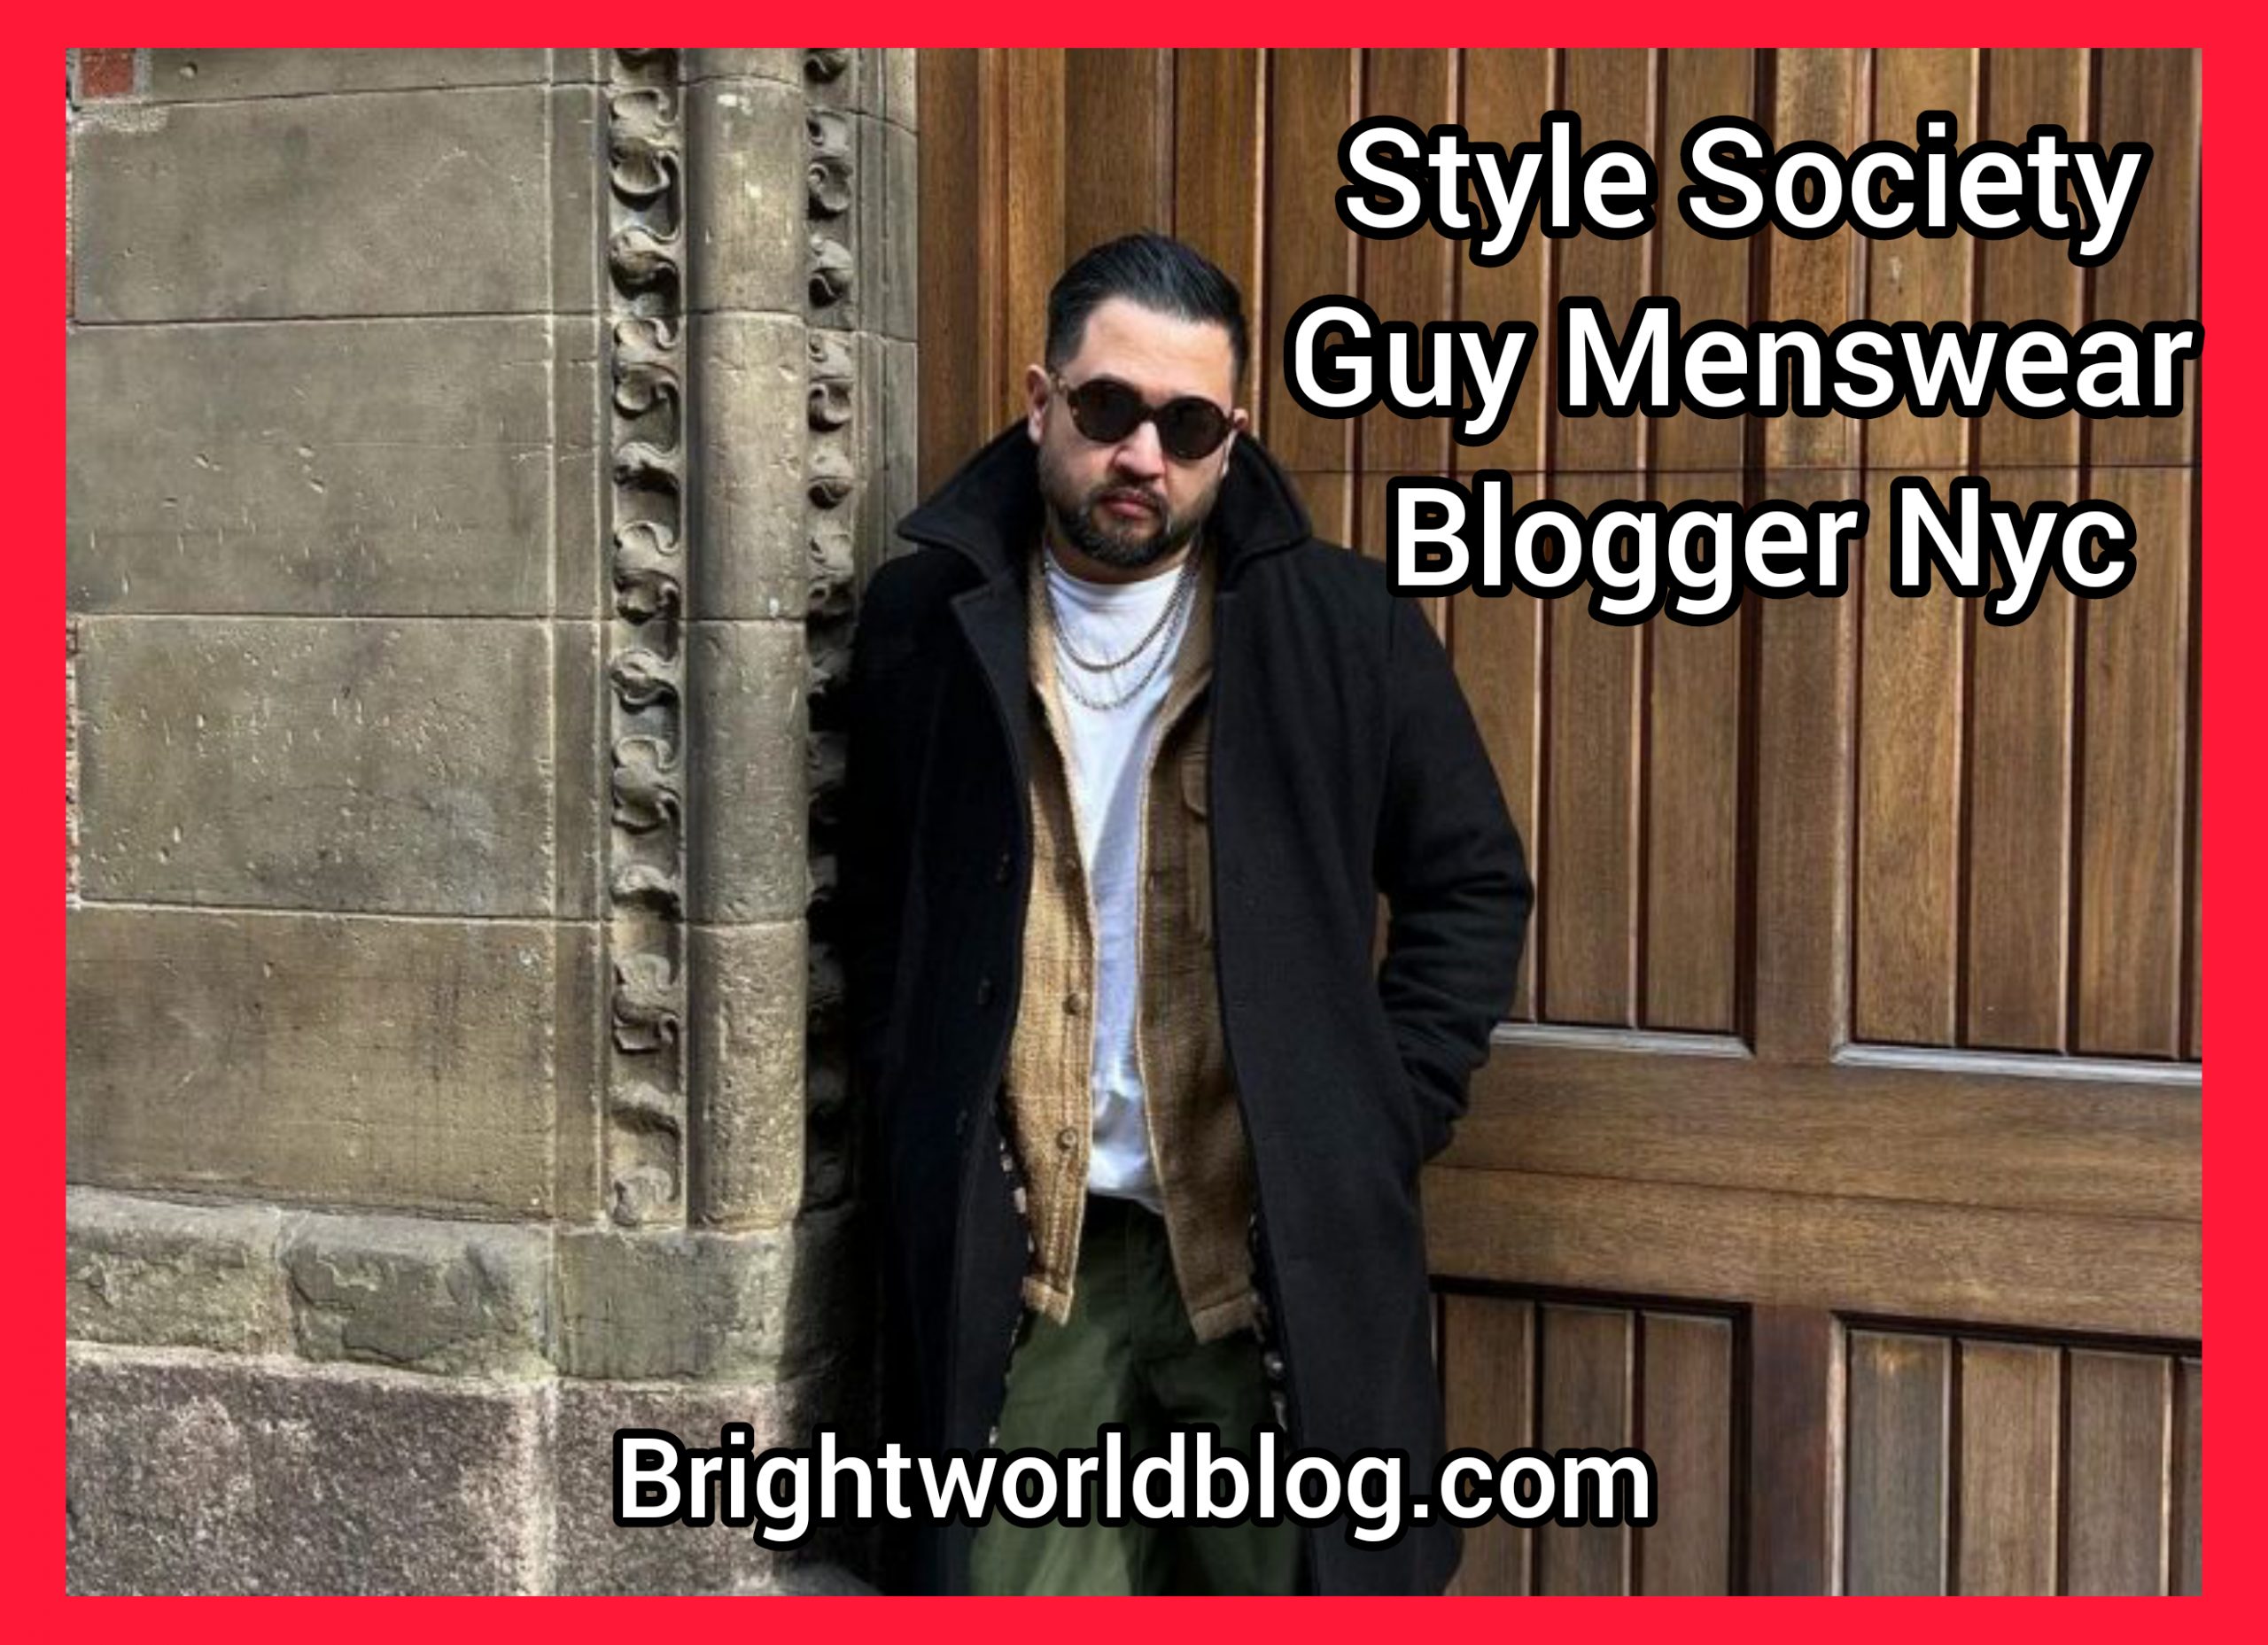 Style Society Guy Menswear Blogger Nyc